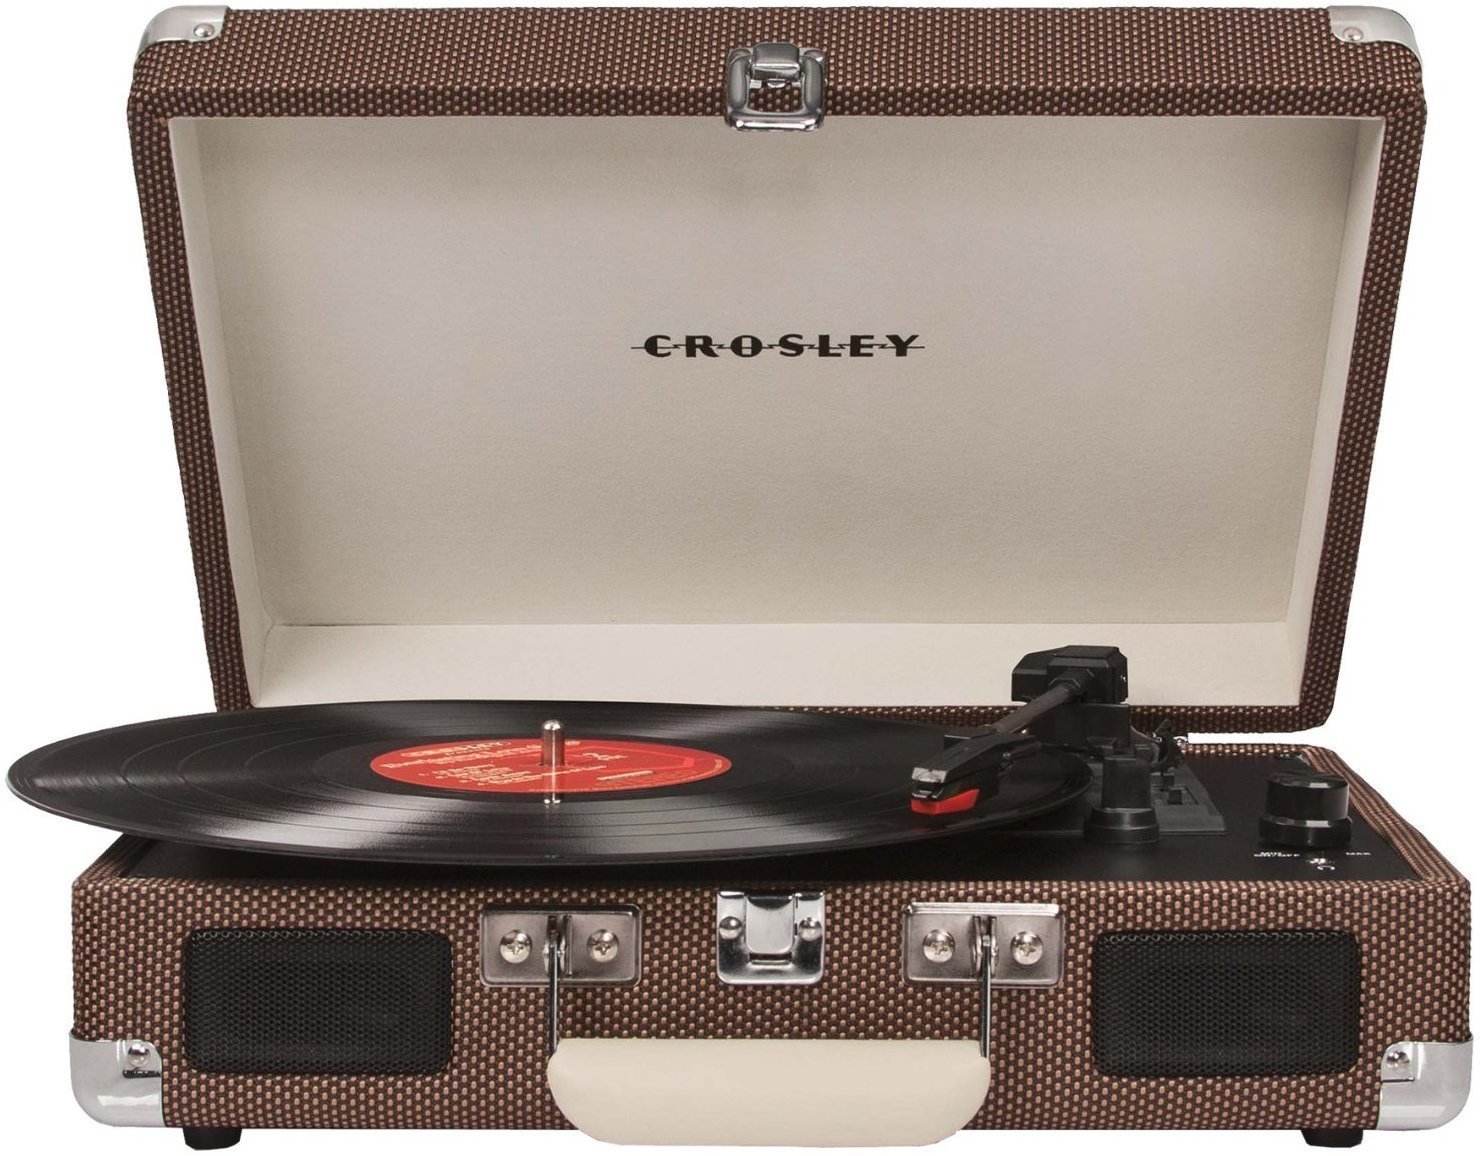 Przenośny gramofon Crosley Cruiser Deluxe Tweedowy